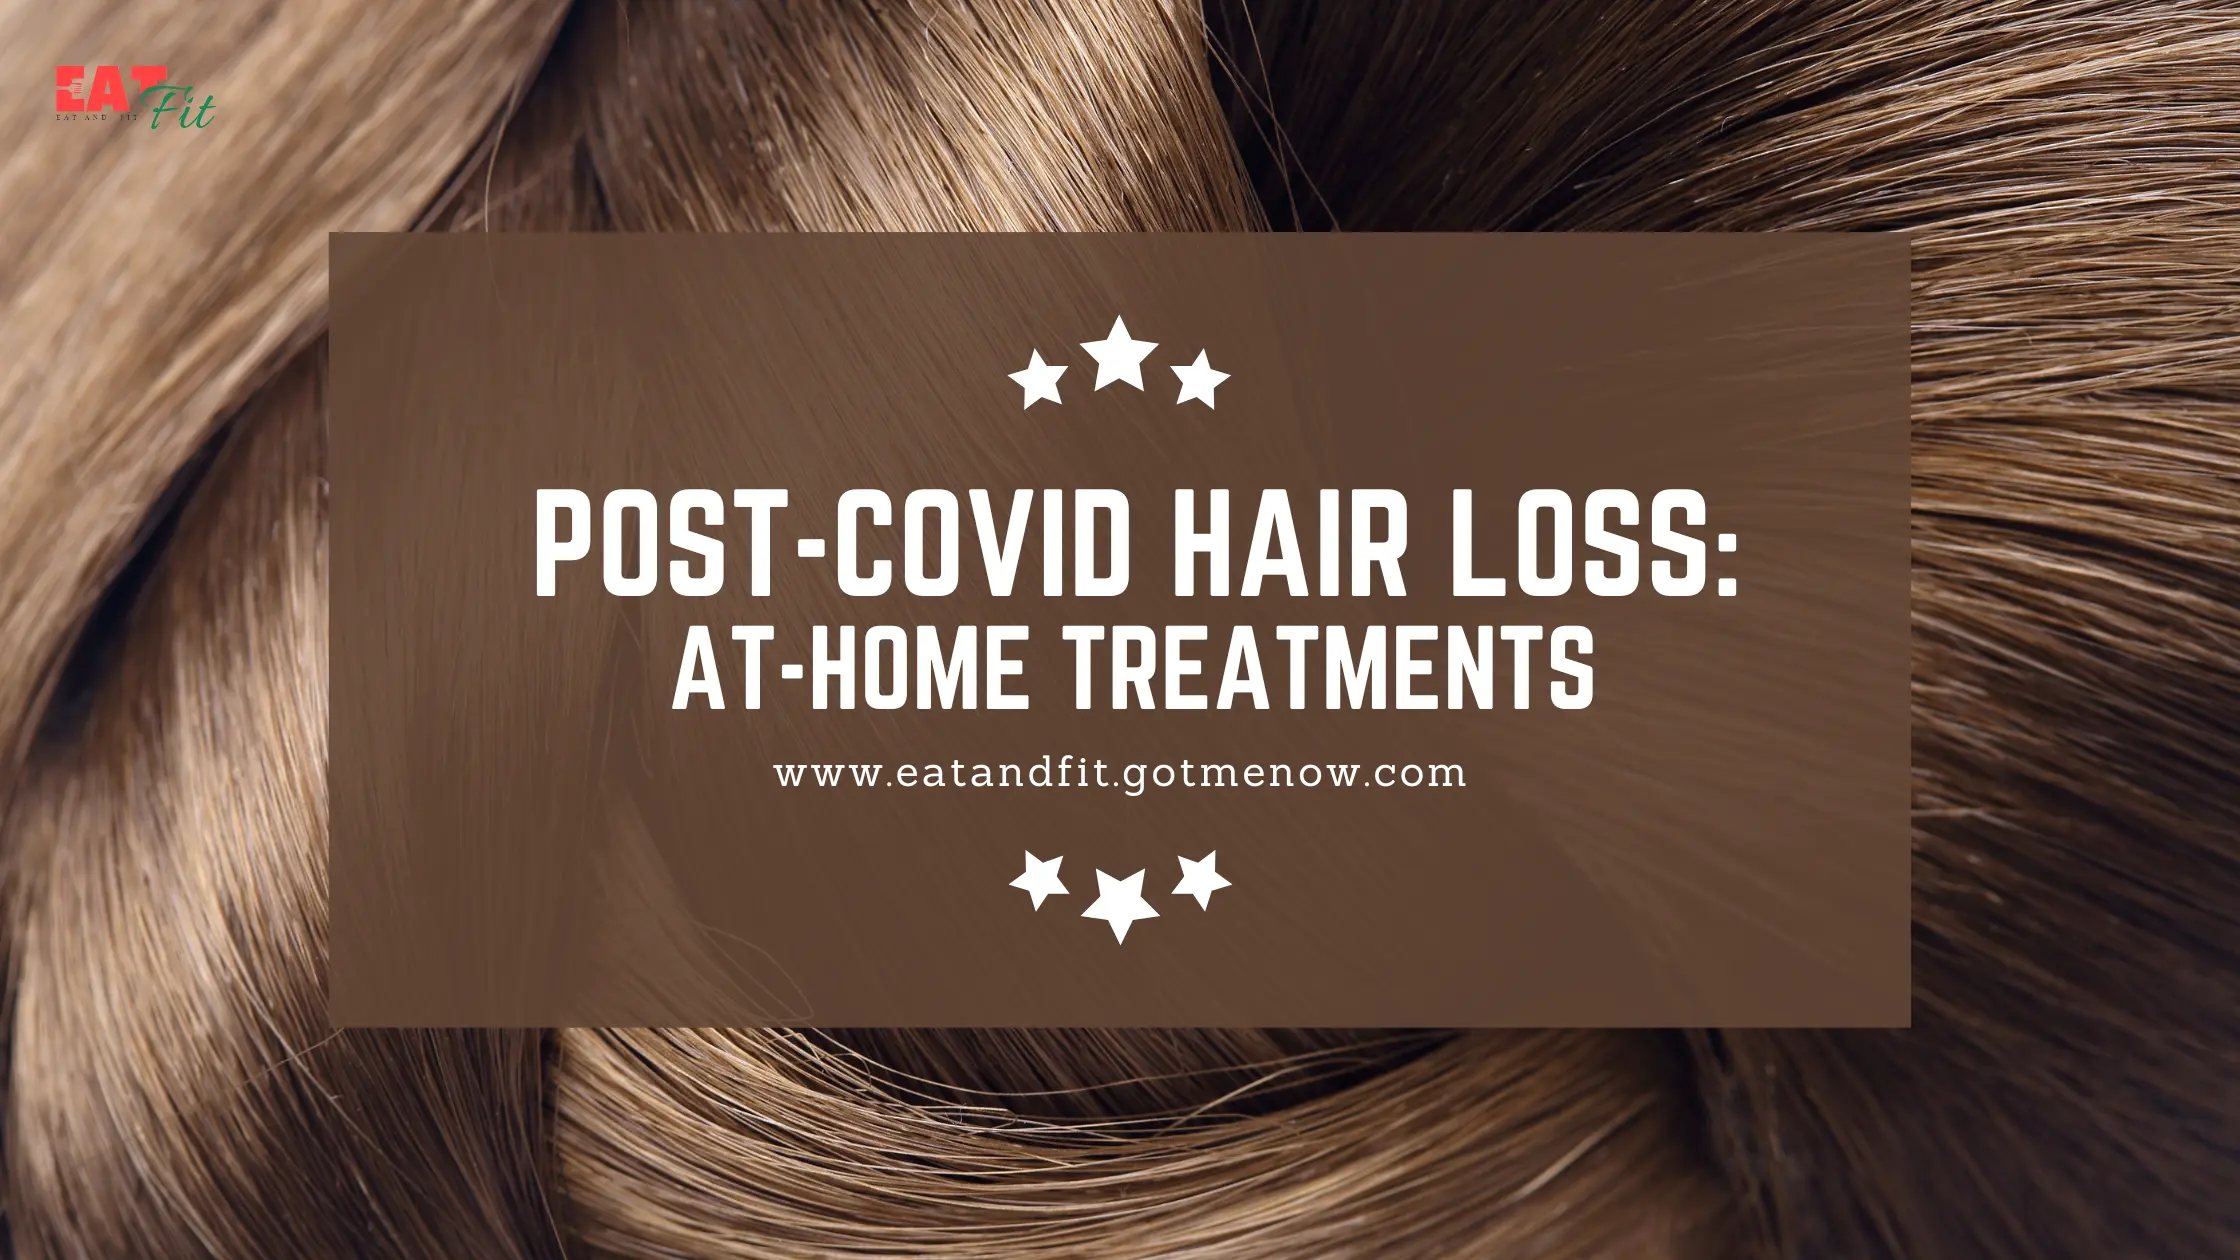 Post-COVID hair loss